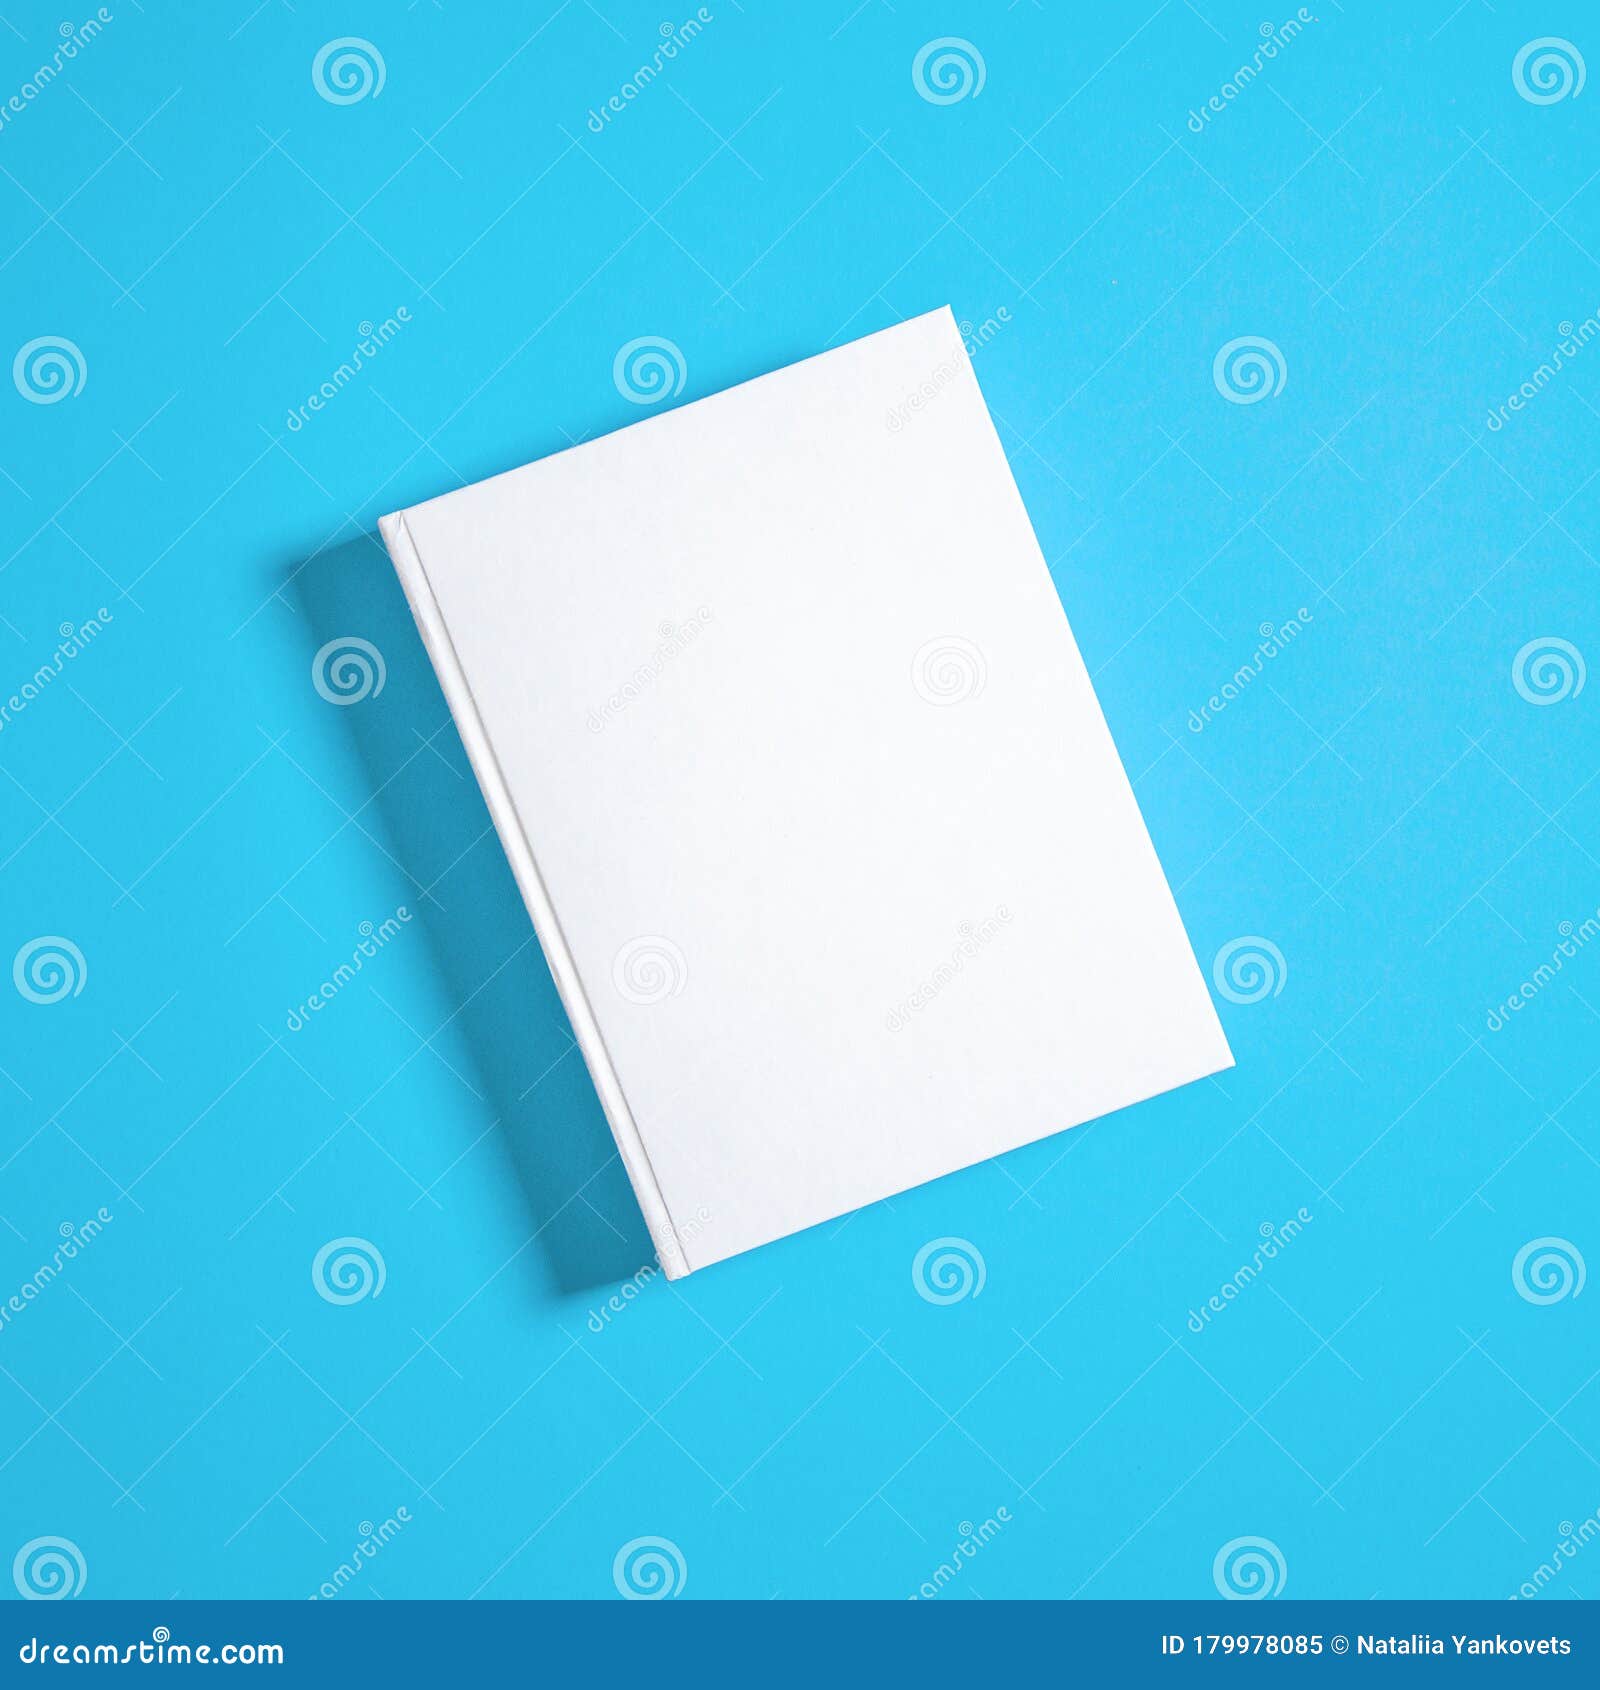 Download Mockup De Livro Branco Fechado Em Papel Branco Imagem de Stock - Imagem de limpo, blank: 179978085